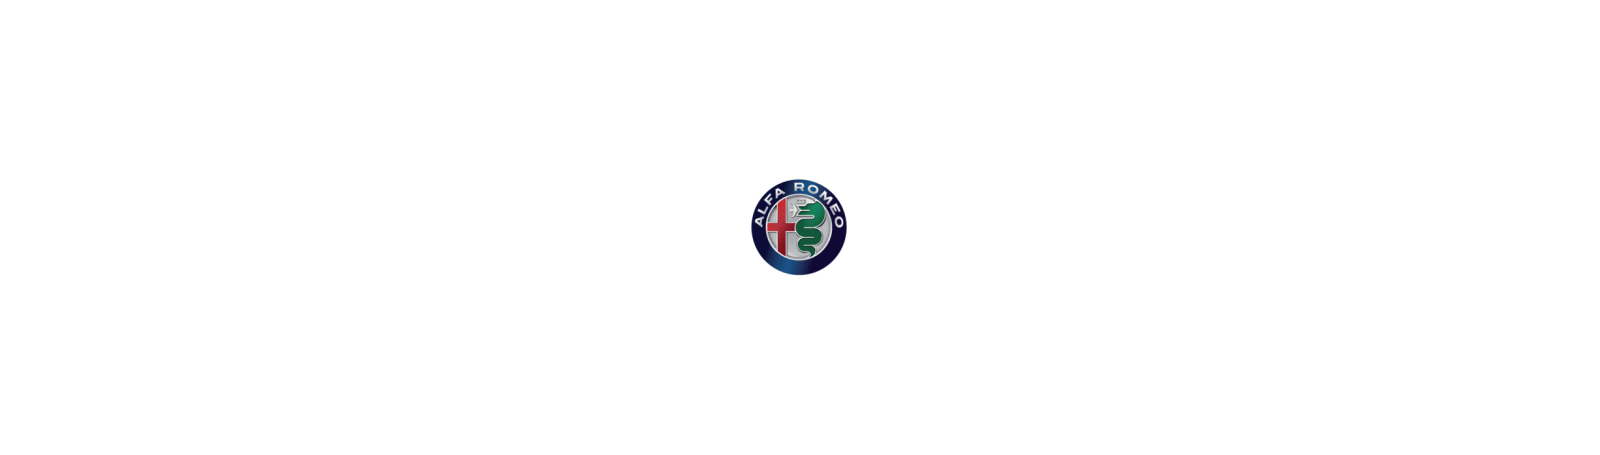 Alfa Romeo STELVIO